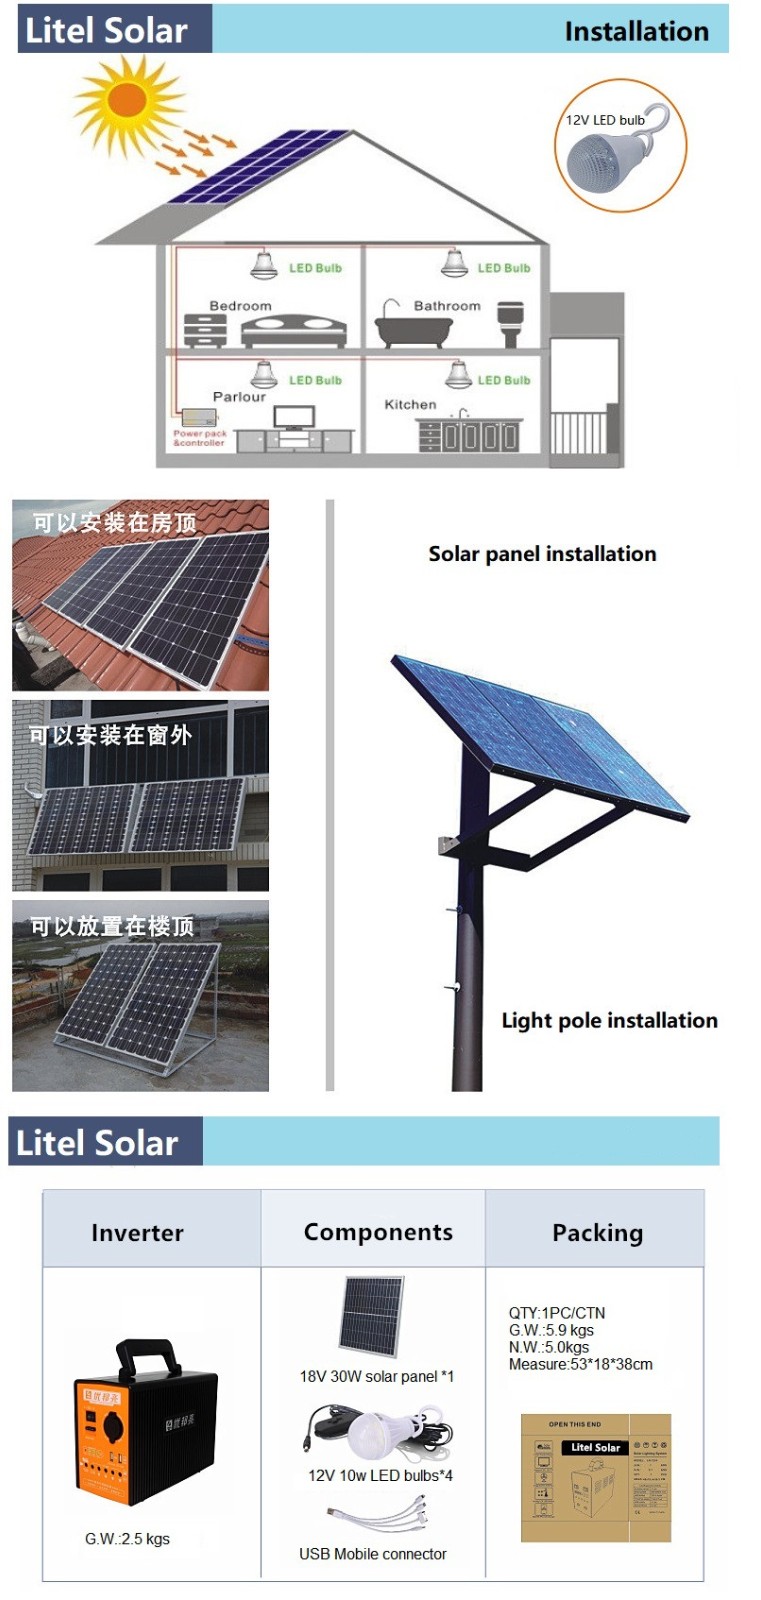 Litel เทคโนโลยีความสว่างระบบแสงสว่างพลังงานแสงอาทิตย์ราคาโรงงานสำหรับการประชุมเชิงปฏิบัติการ-5